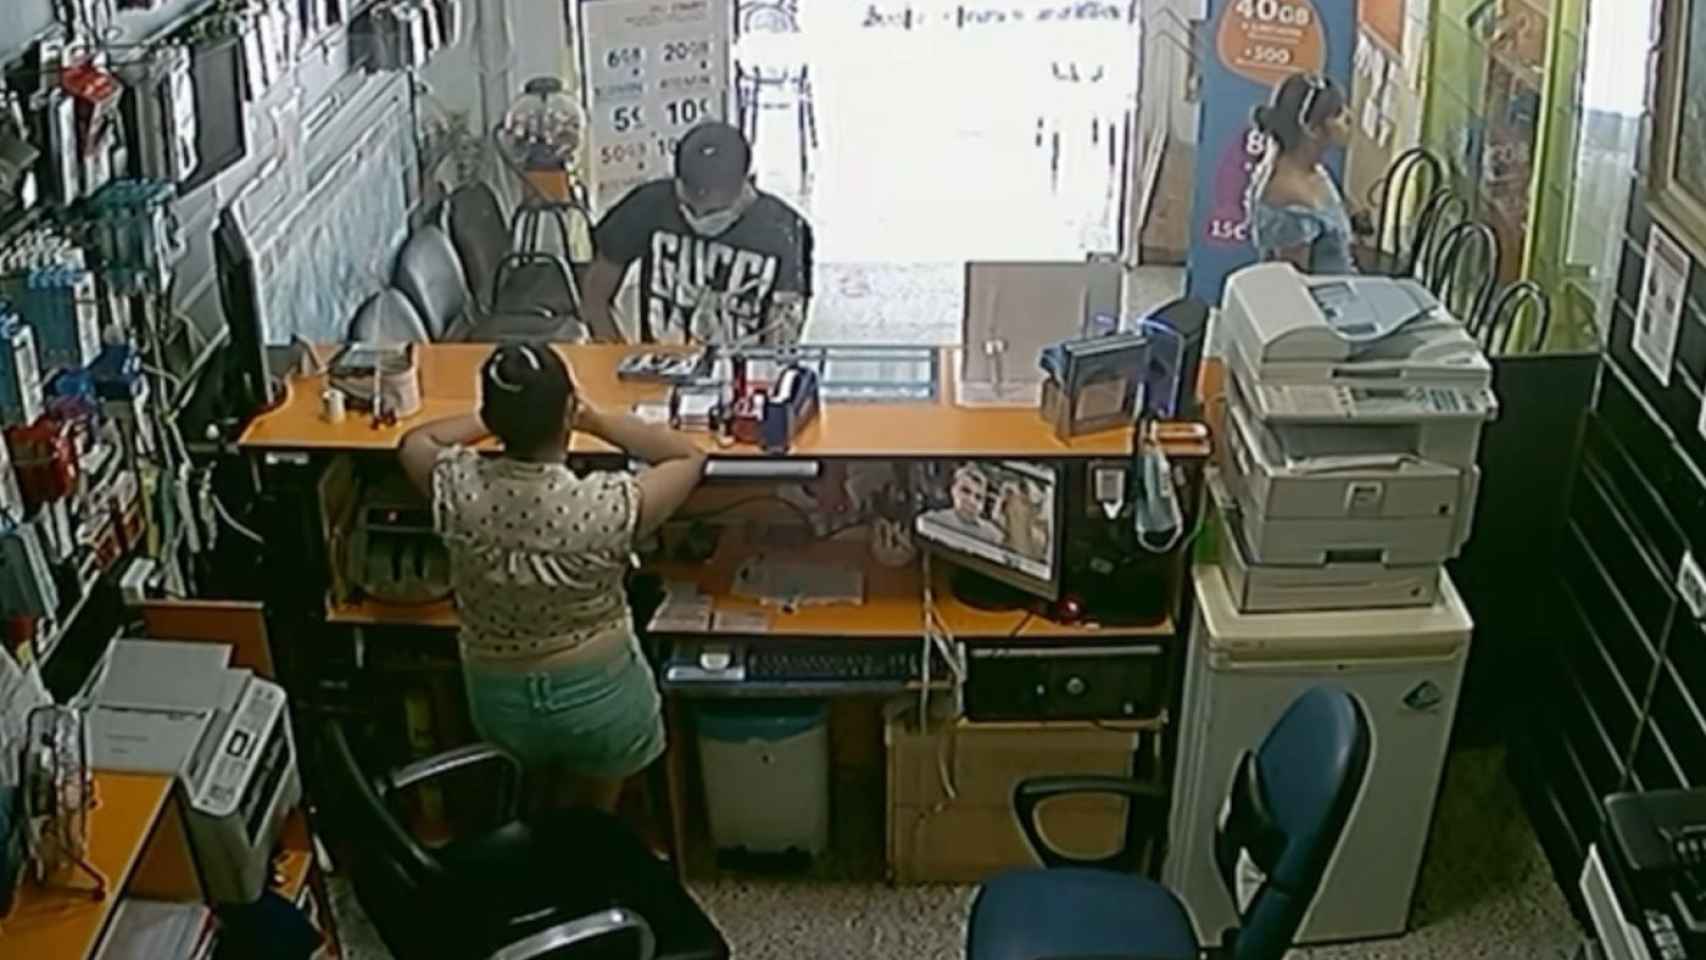 Imágenes del robo en una tienda electrónica de Sabadell / CEDIDA